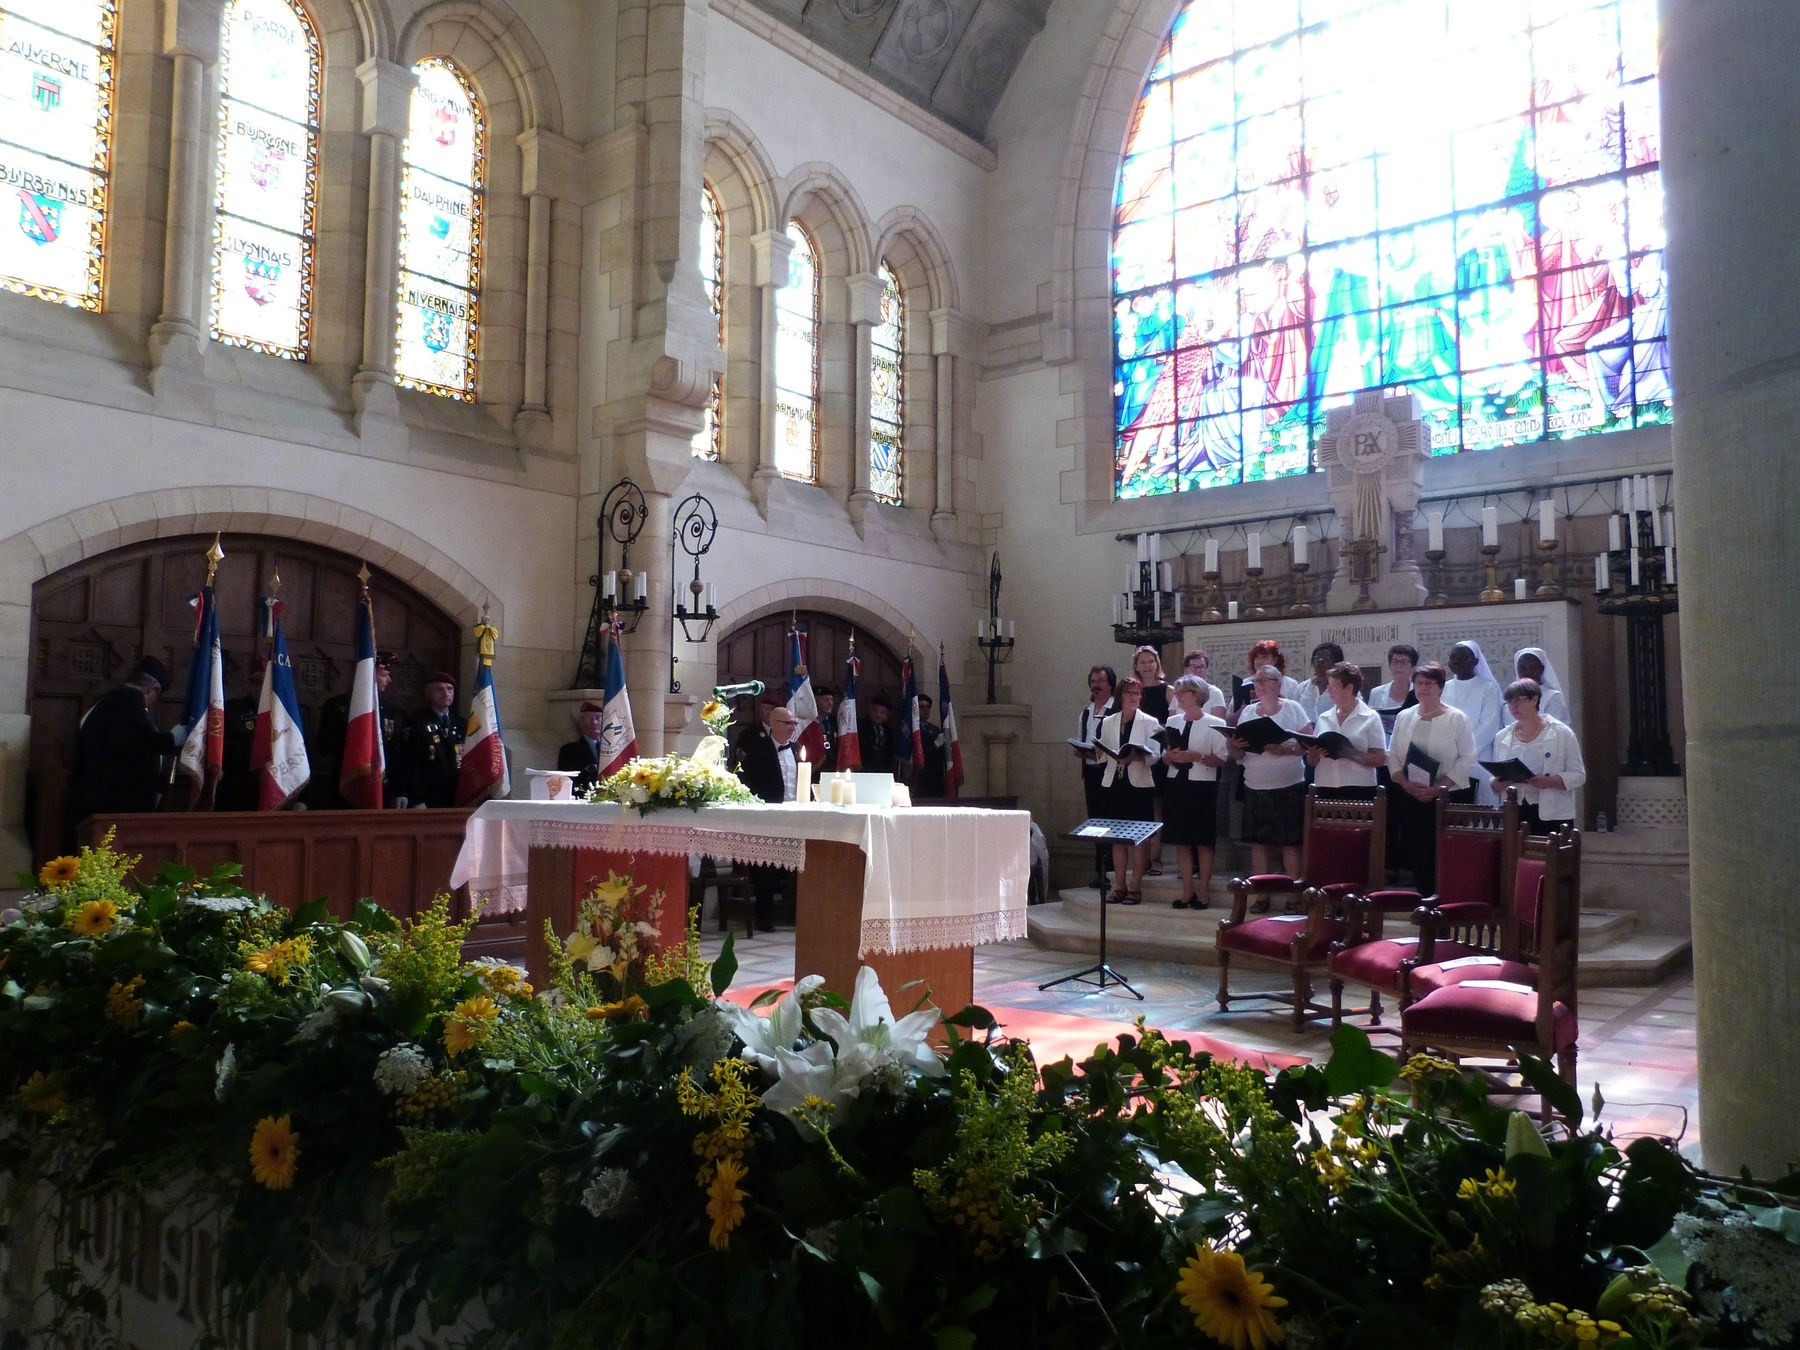 Durant la messe, la chorale paroissiale : 8 juillet 2018 Mémorial de Dormans